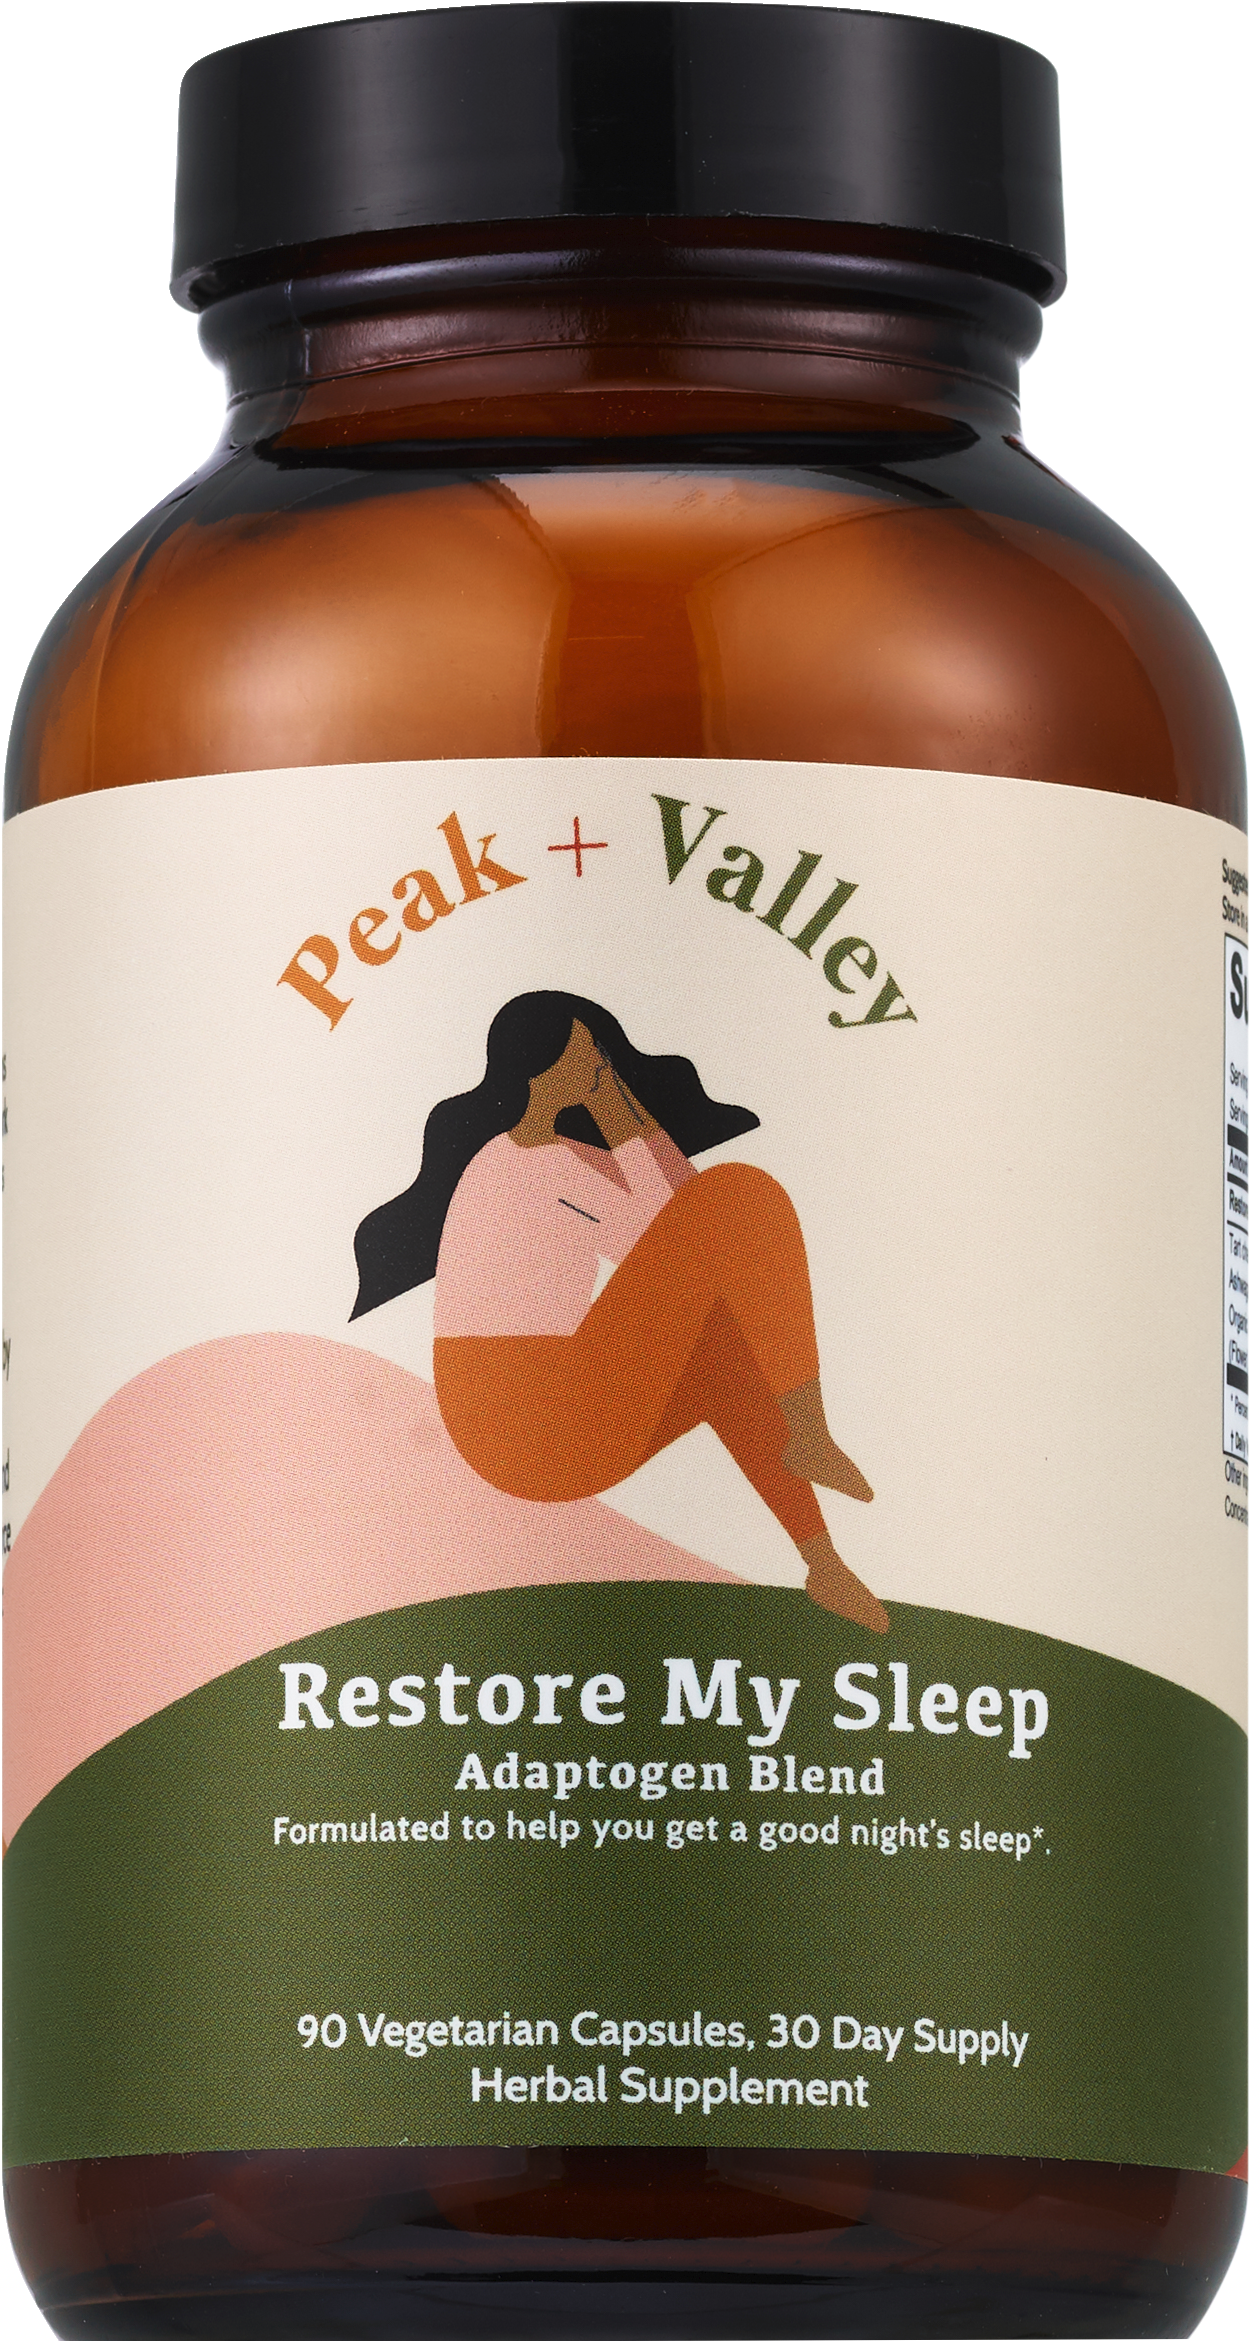 Peak + Valley Restore My Sleep Capsules